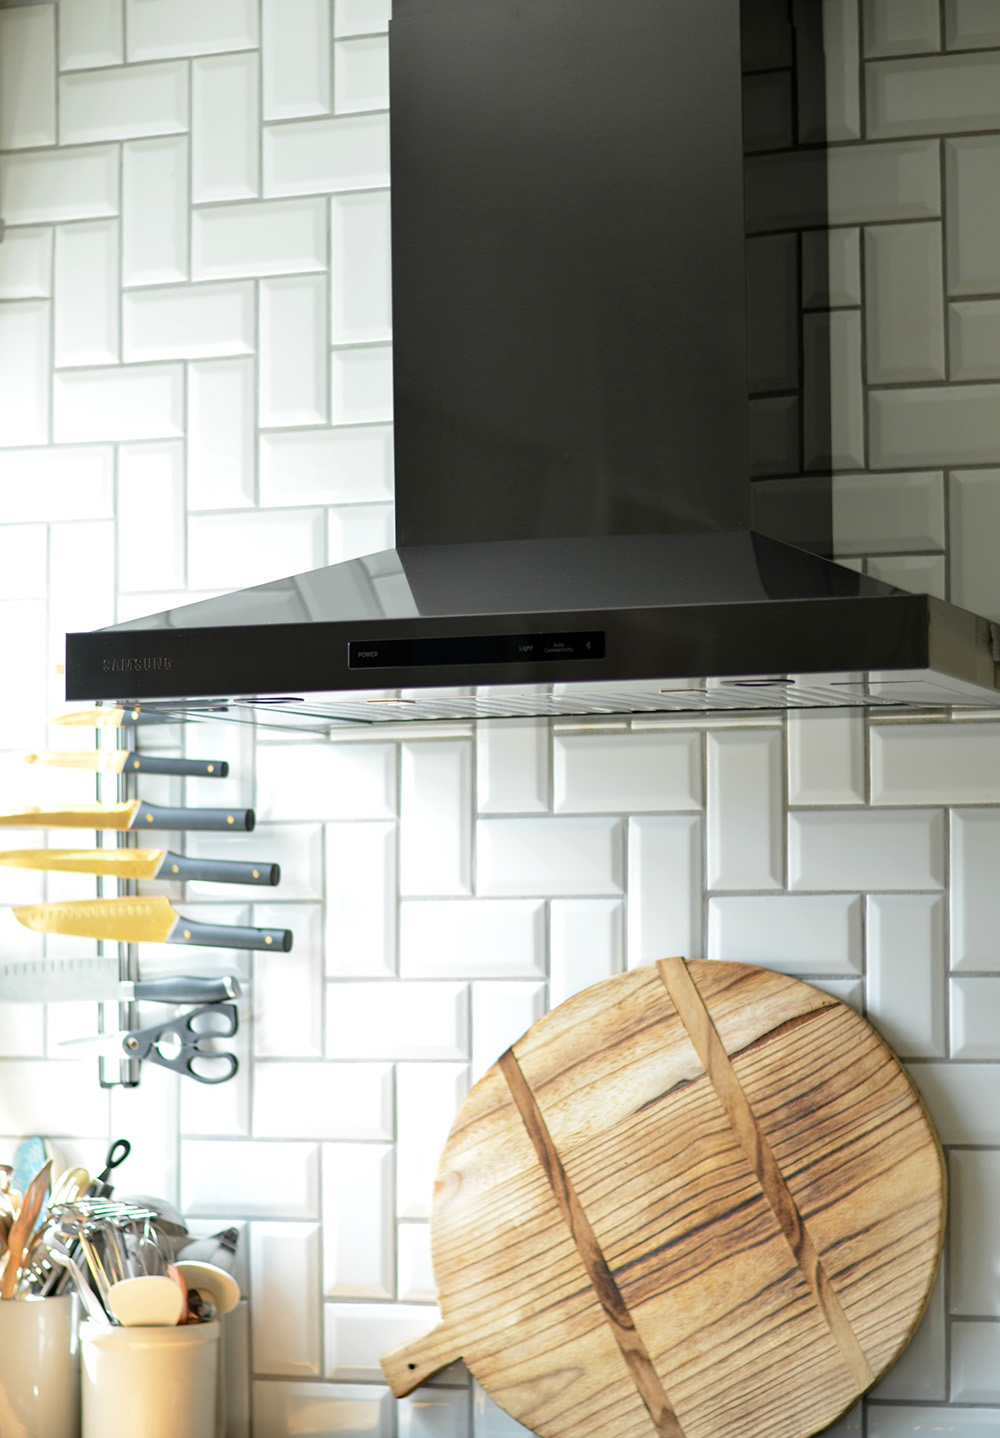 A black wall mount range hood hanging in front of a white tile backsplash.